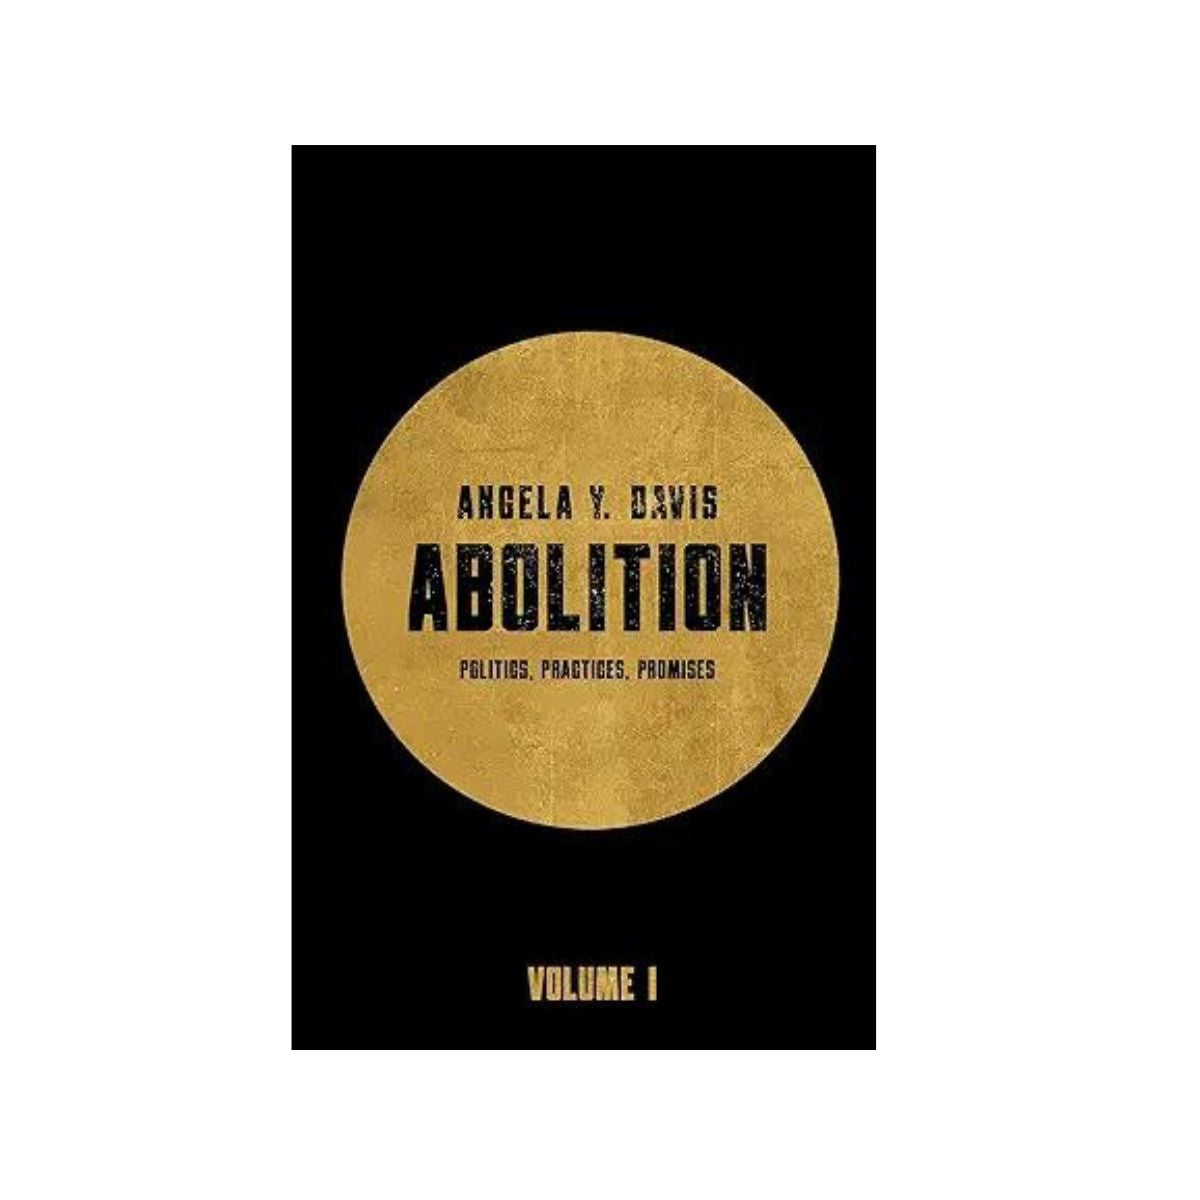 Abolition: Politics, Practices, Promises